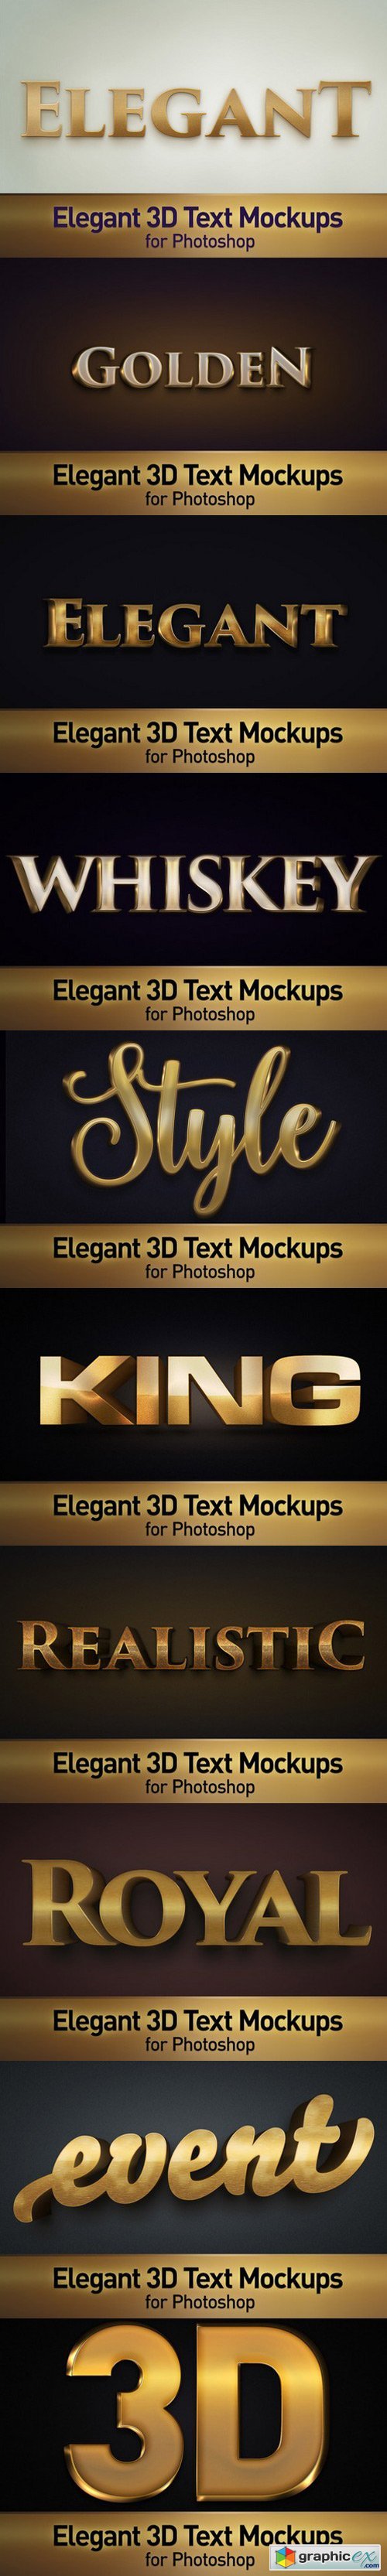 Elegant 3D Text Photoshop Mockups